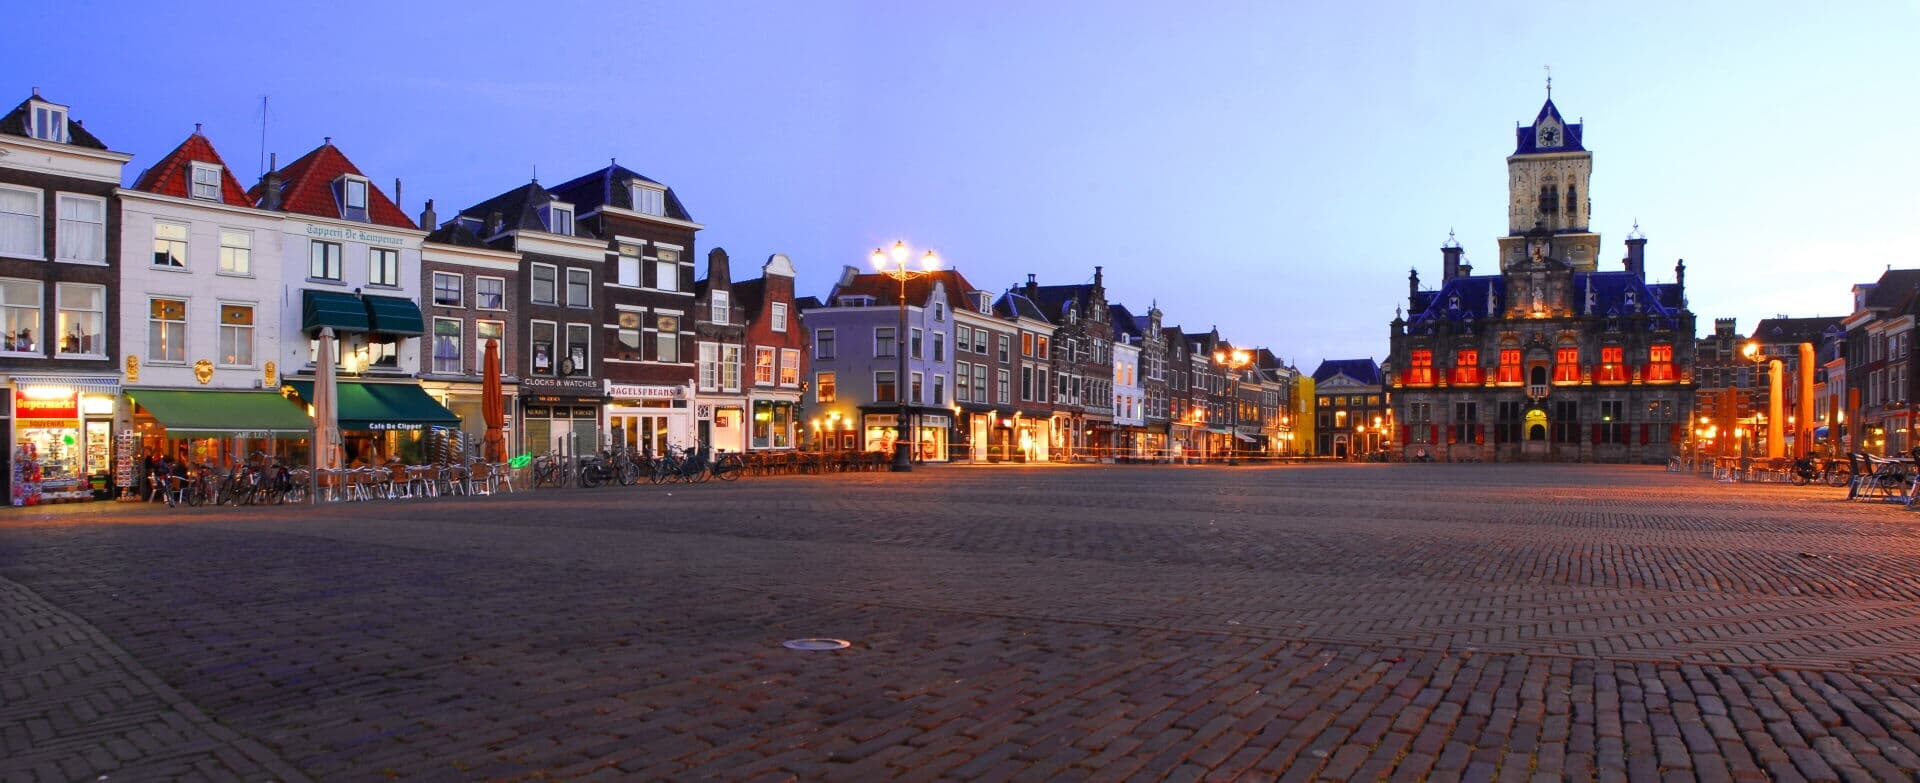 Delft photo